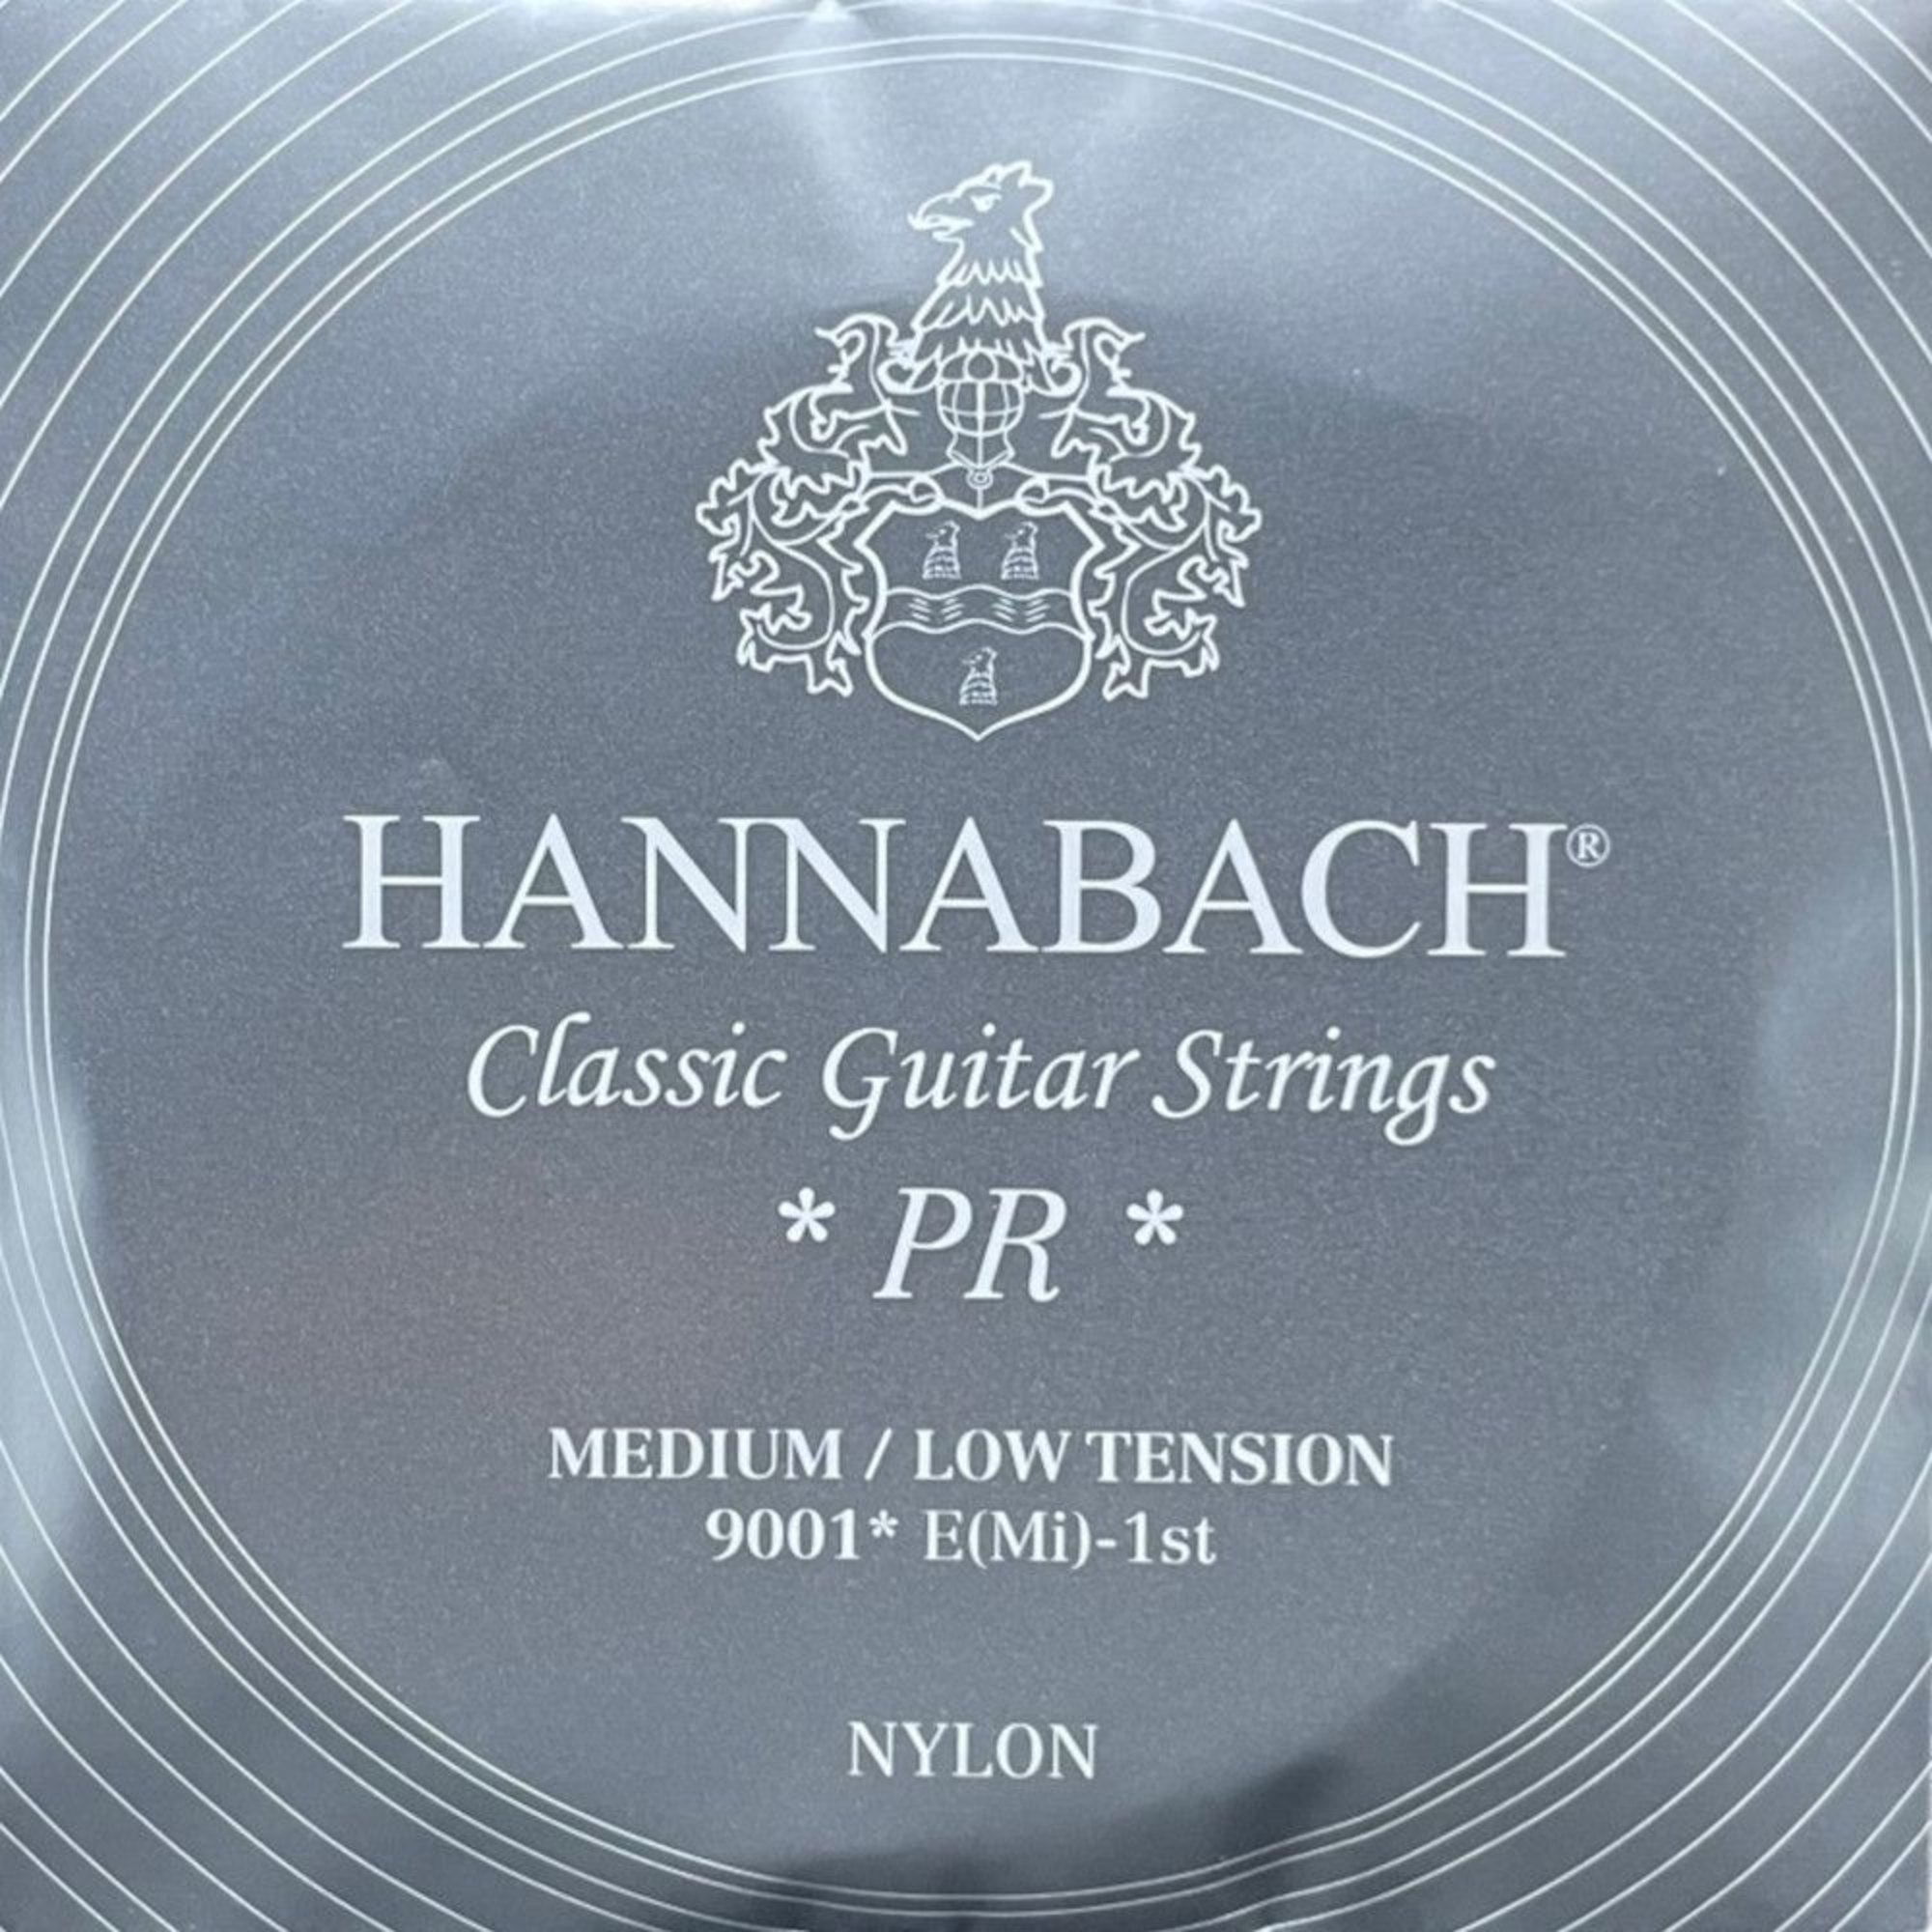 Hannabach Silver 200 Sett Medium/Low Tension